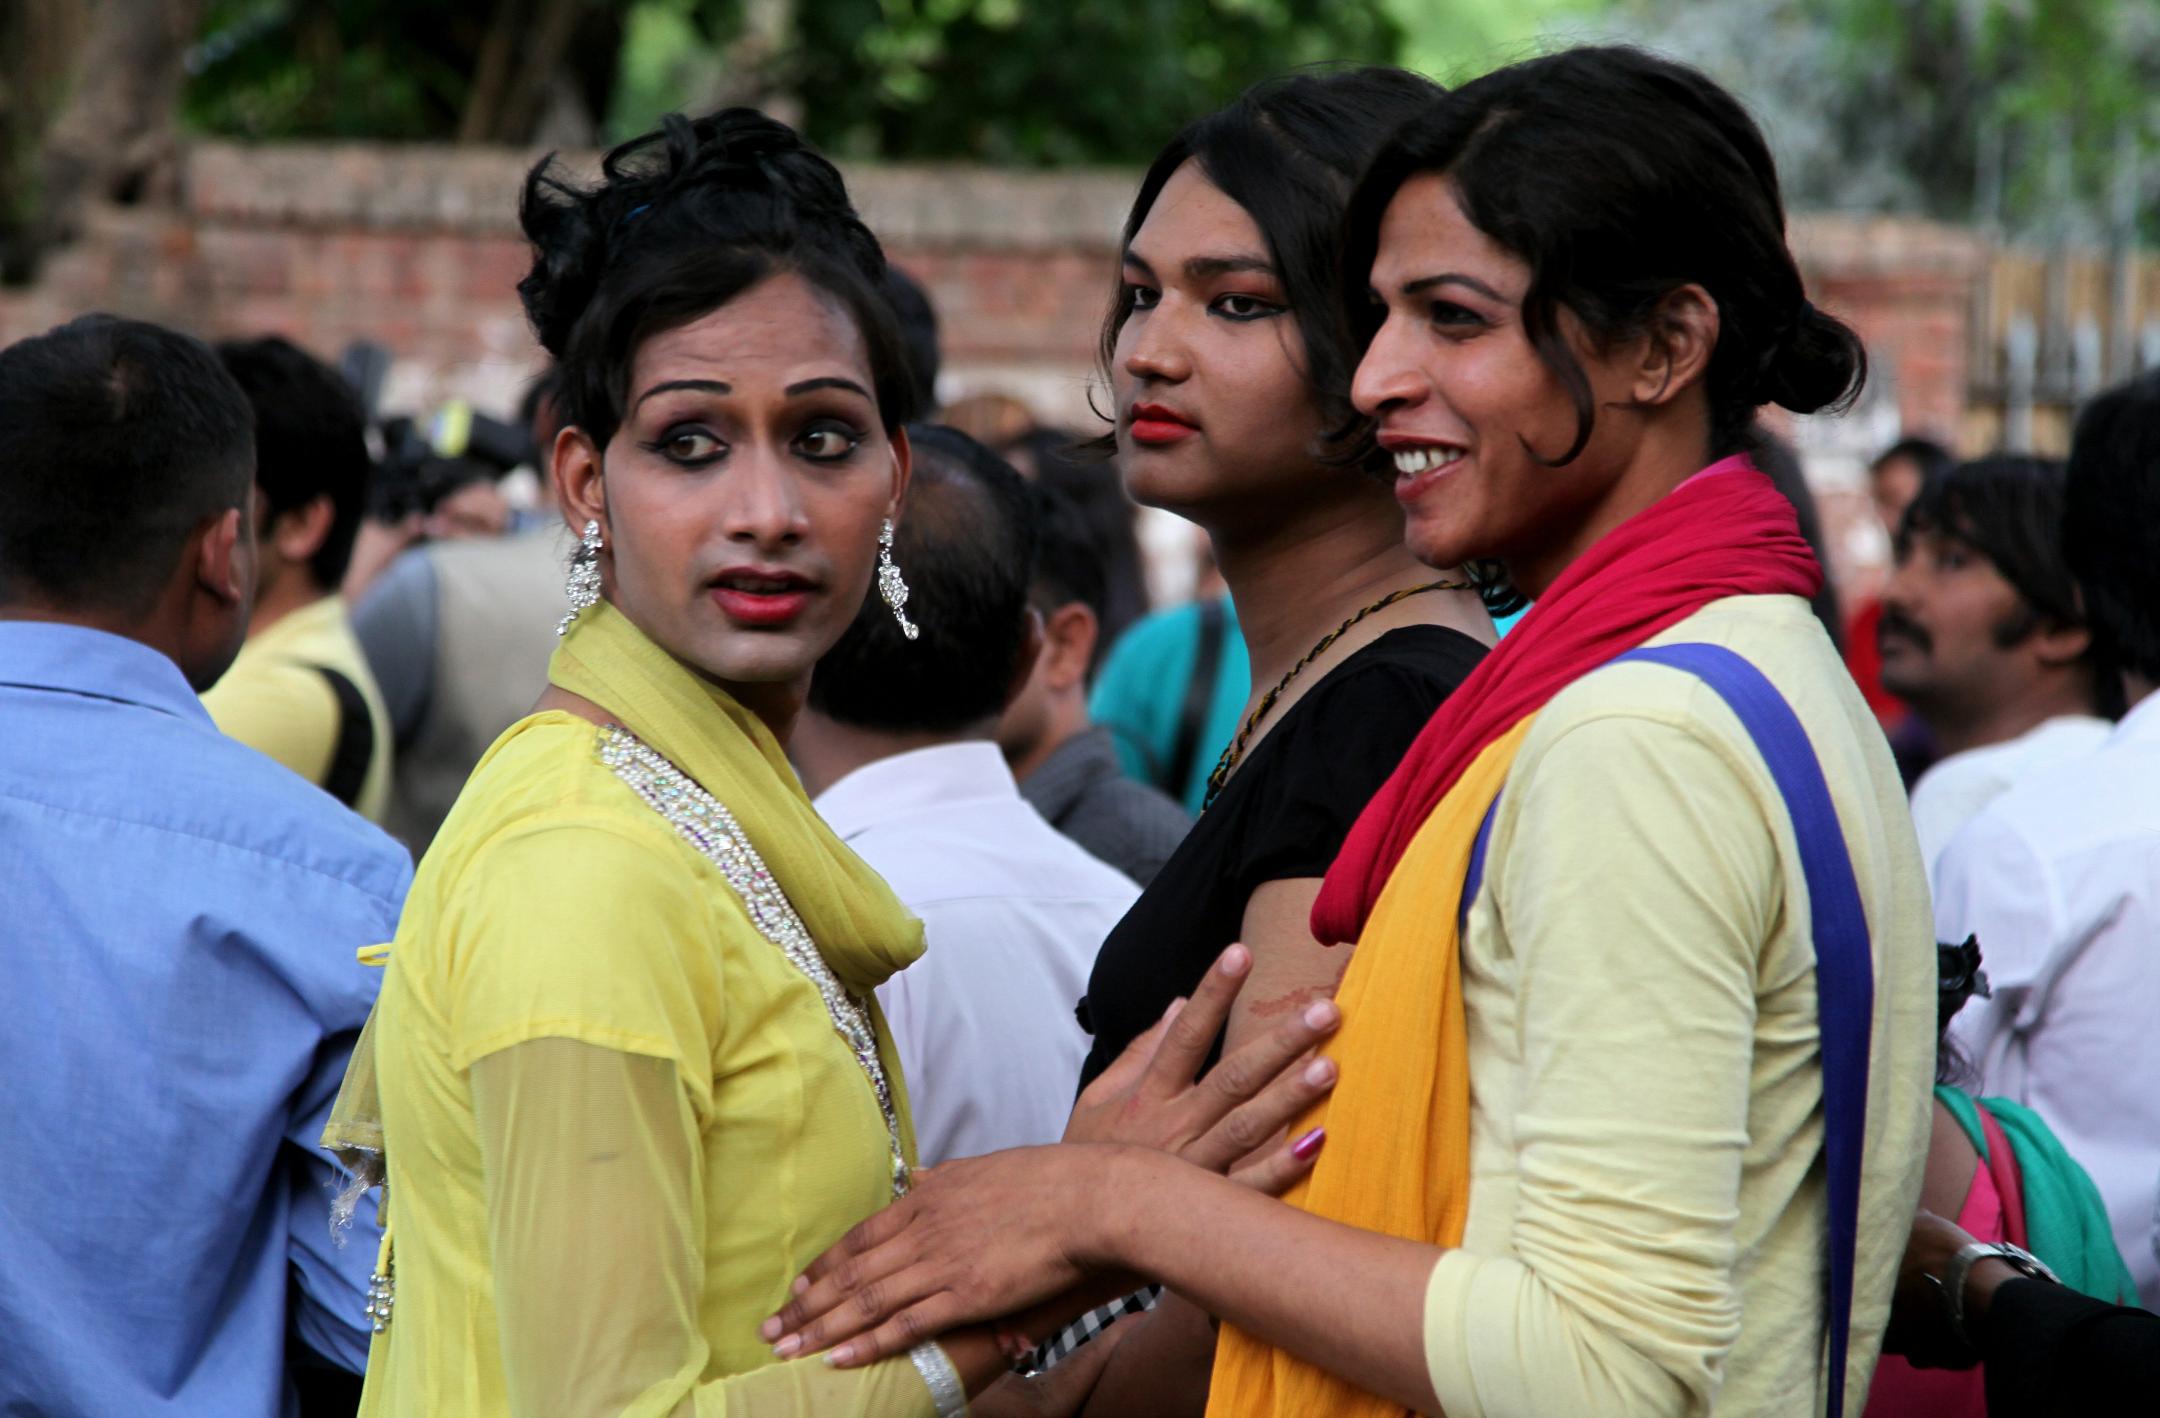 Membres de la communauté Hijras en Inde.